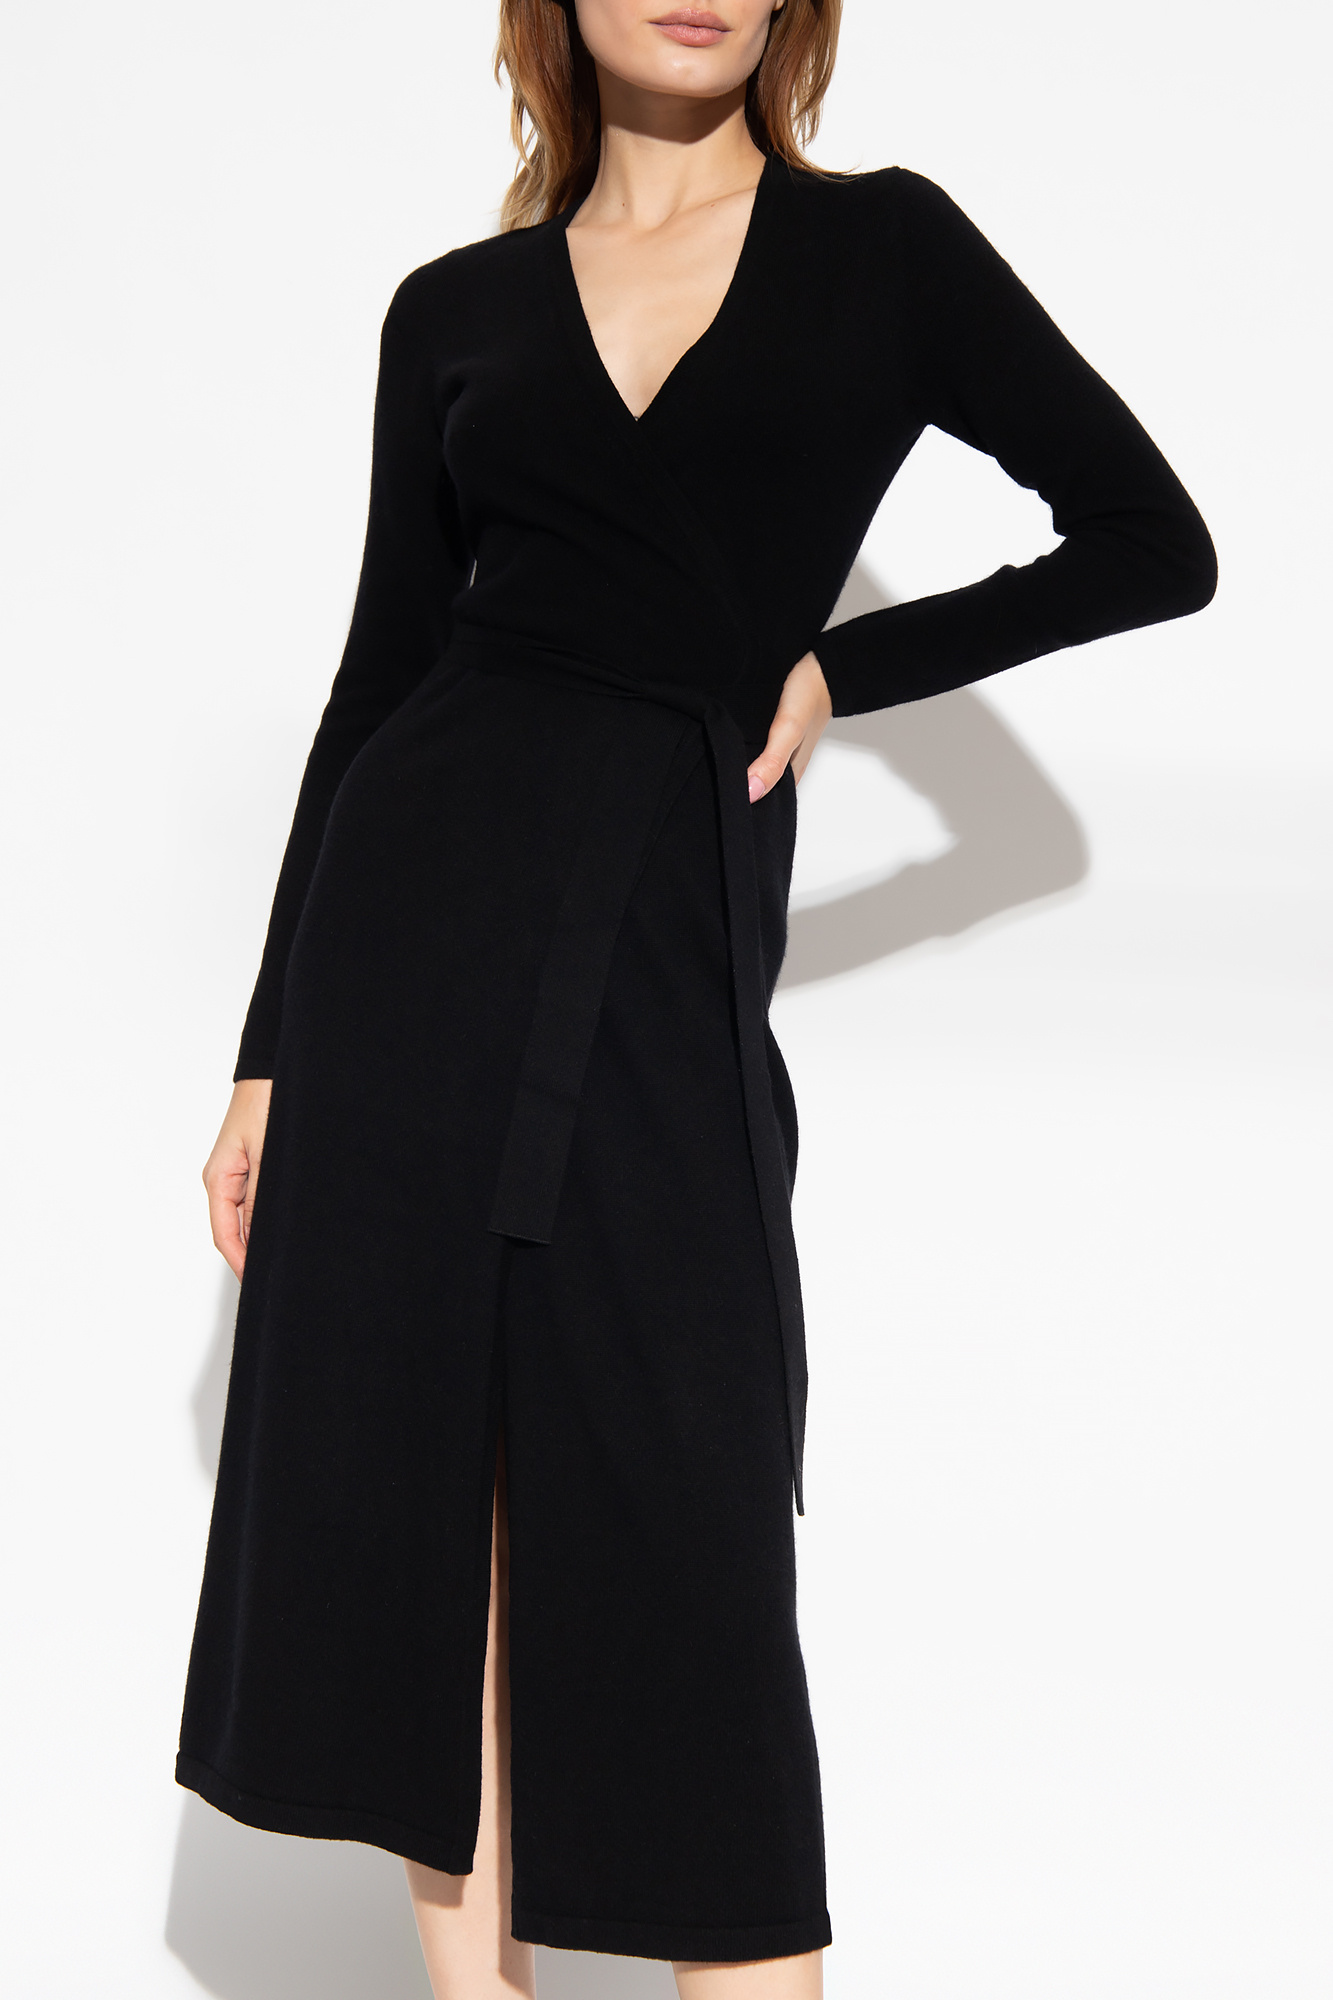 Diane Von Furstenberg 'Astrid' wrap dress, Women's Clothing